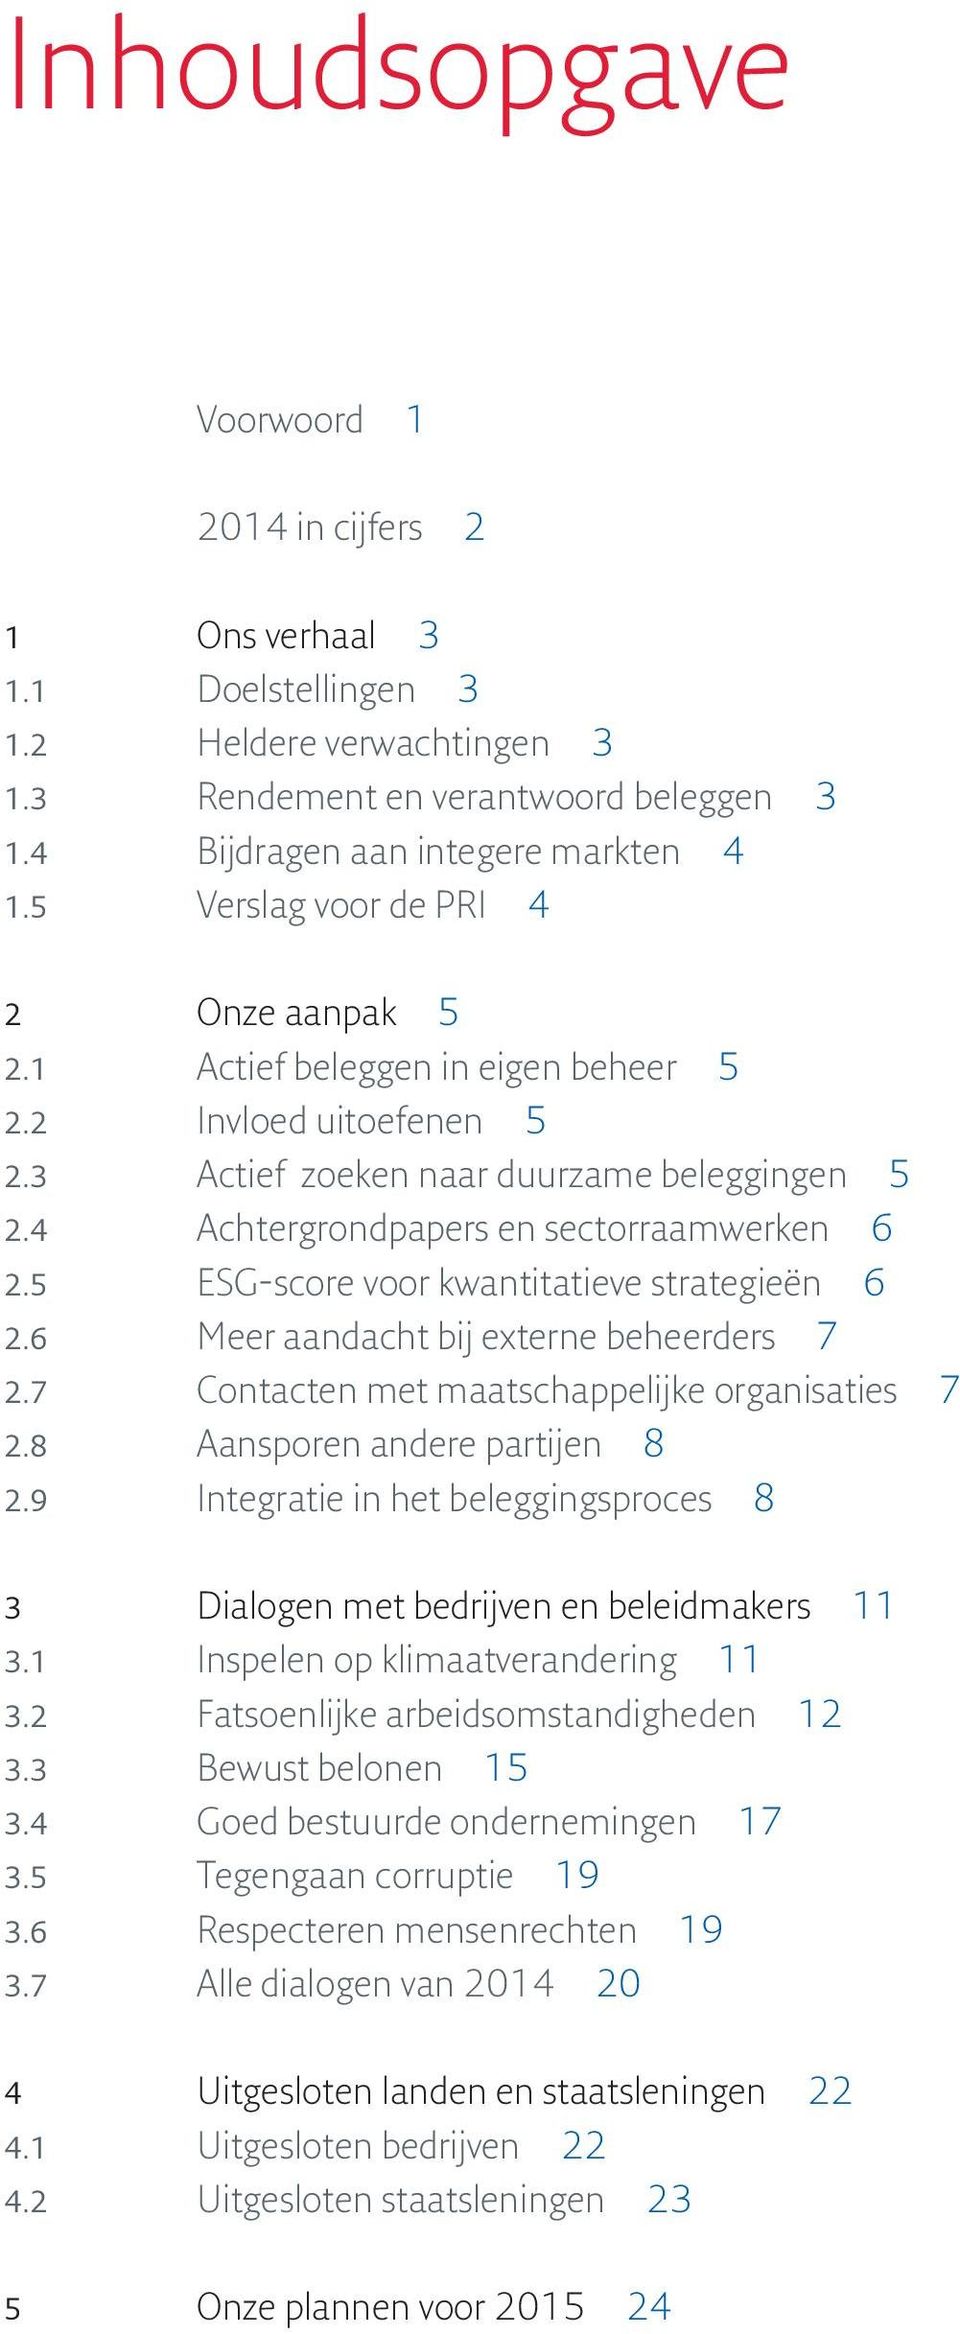 5 ESG-score voor kwantitatieve strategieën 6 2.6 Meer aandacht bij externe beheerders 7 2.7 Contacten met maatschappelijke organisaties 7 2.8 Aansporen andere partijen 8 2.